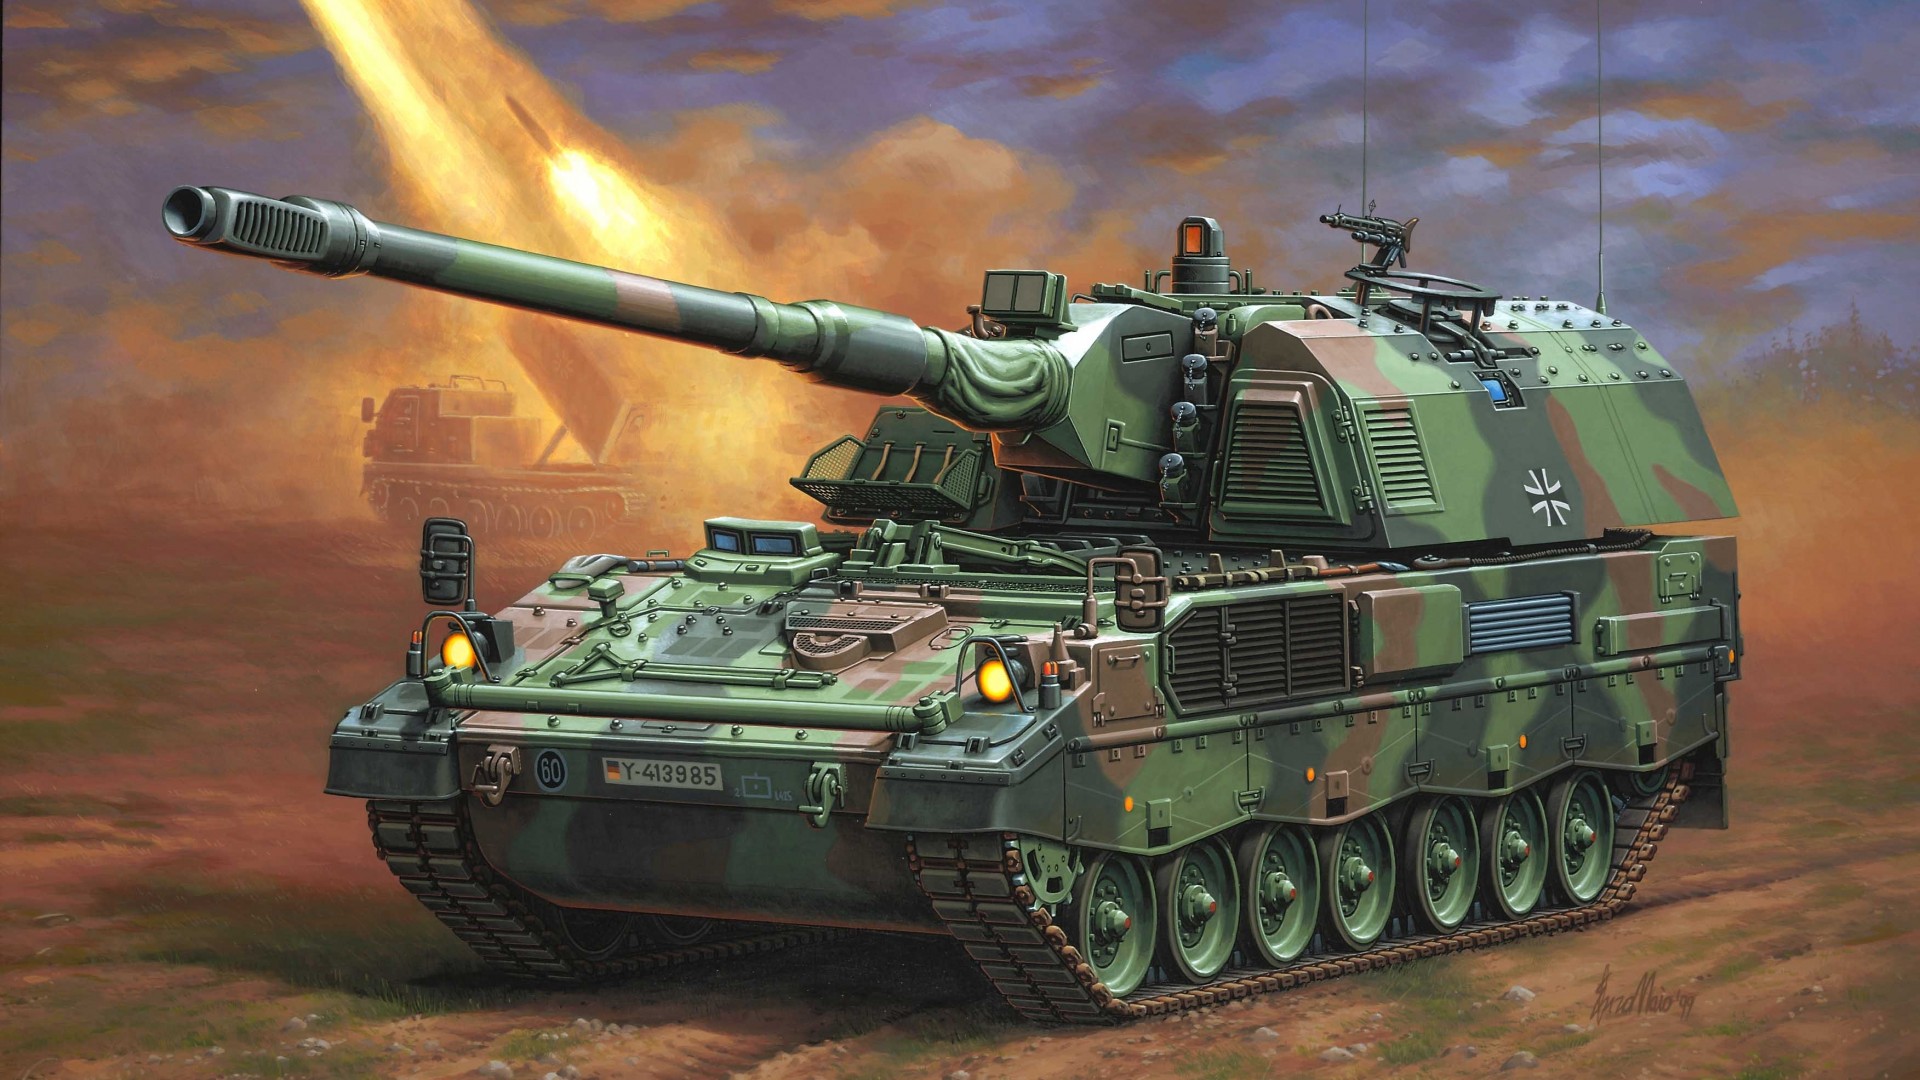 PzH 2000, howitzer, Panzerhaubitze, artillery, Bundeswehr, firing, art, painting (horizontal)